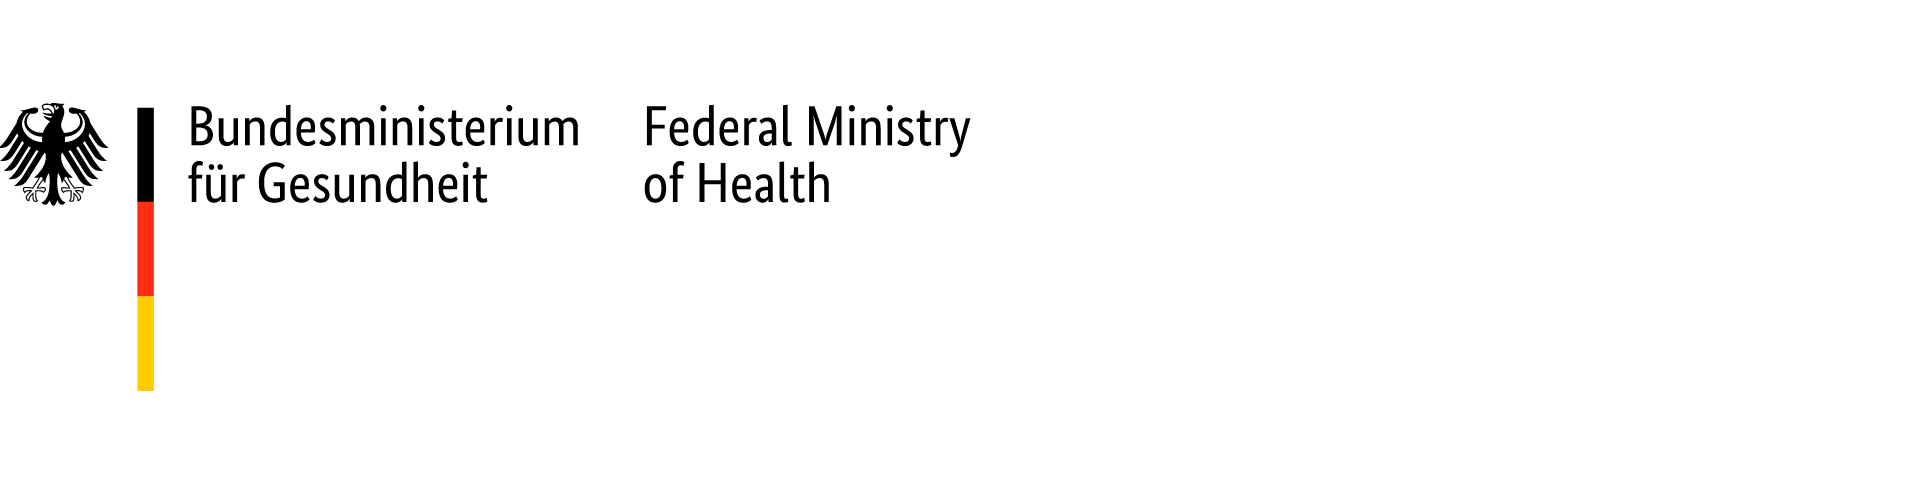 Bildwortmarke: Bundesministerium für Gesundheit, Fedaral Ministry of Health